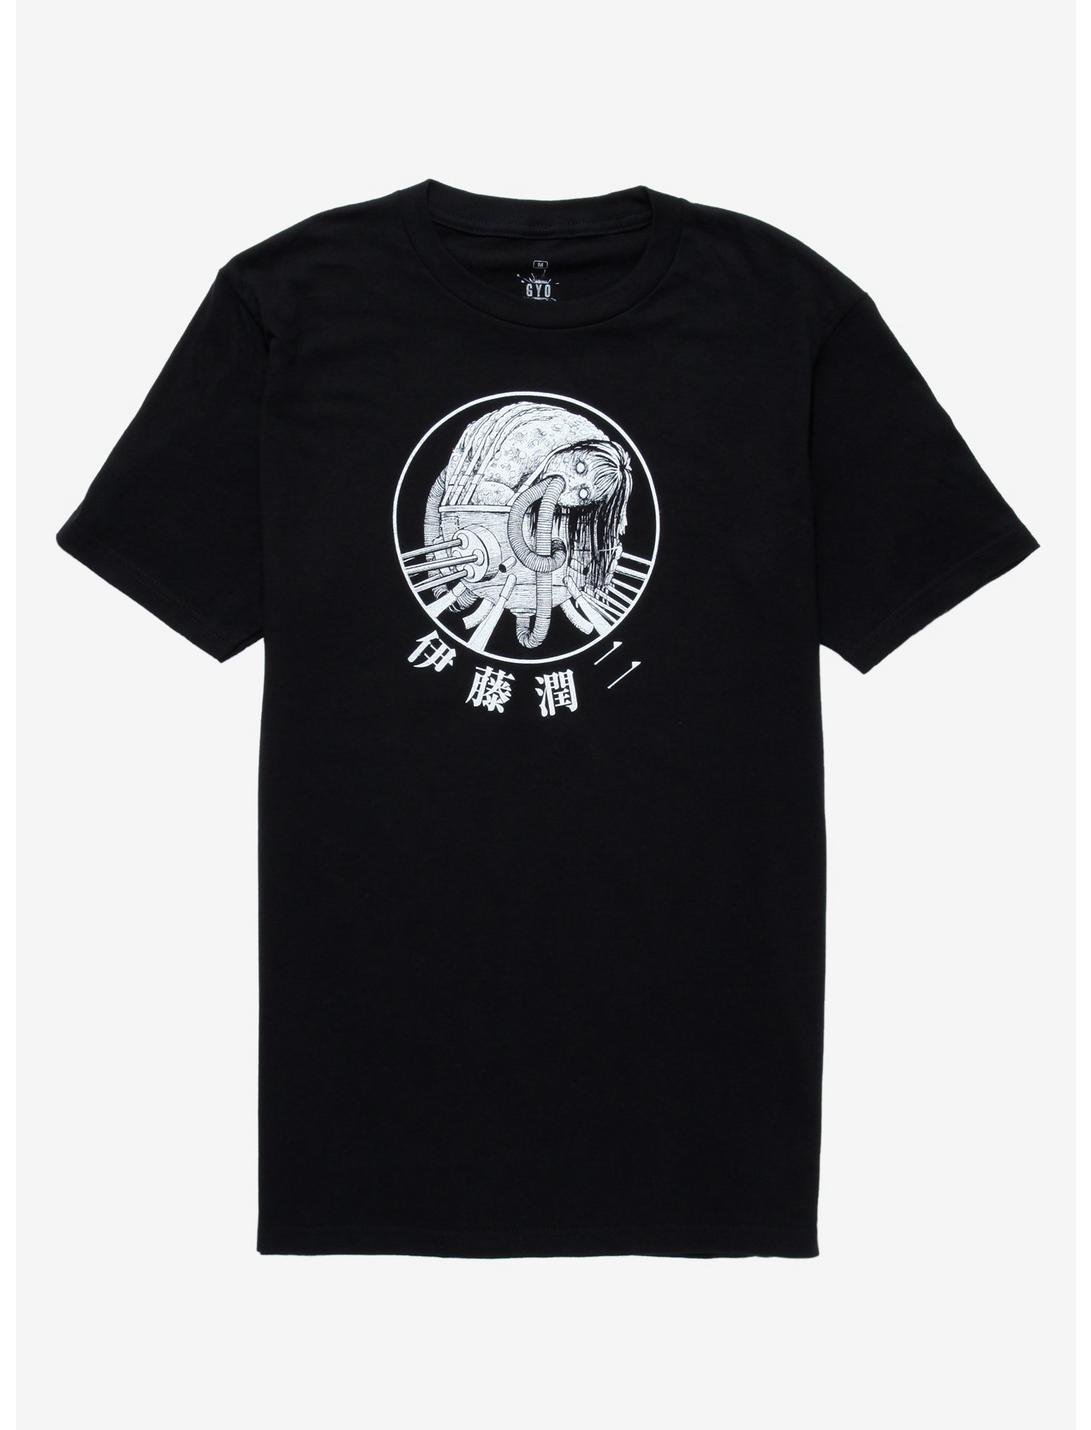 Junji Ito Gyo T-Shirt, BLACK, hi-res